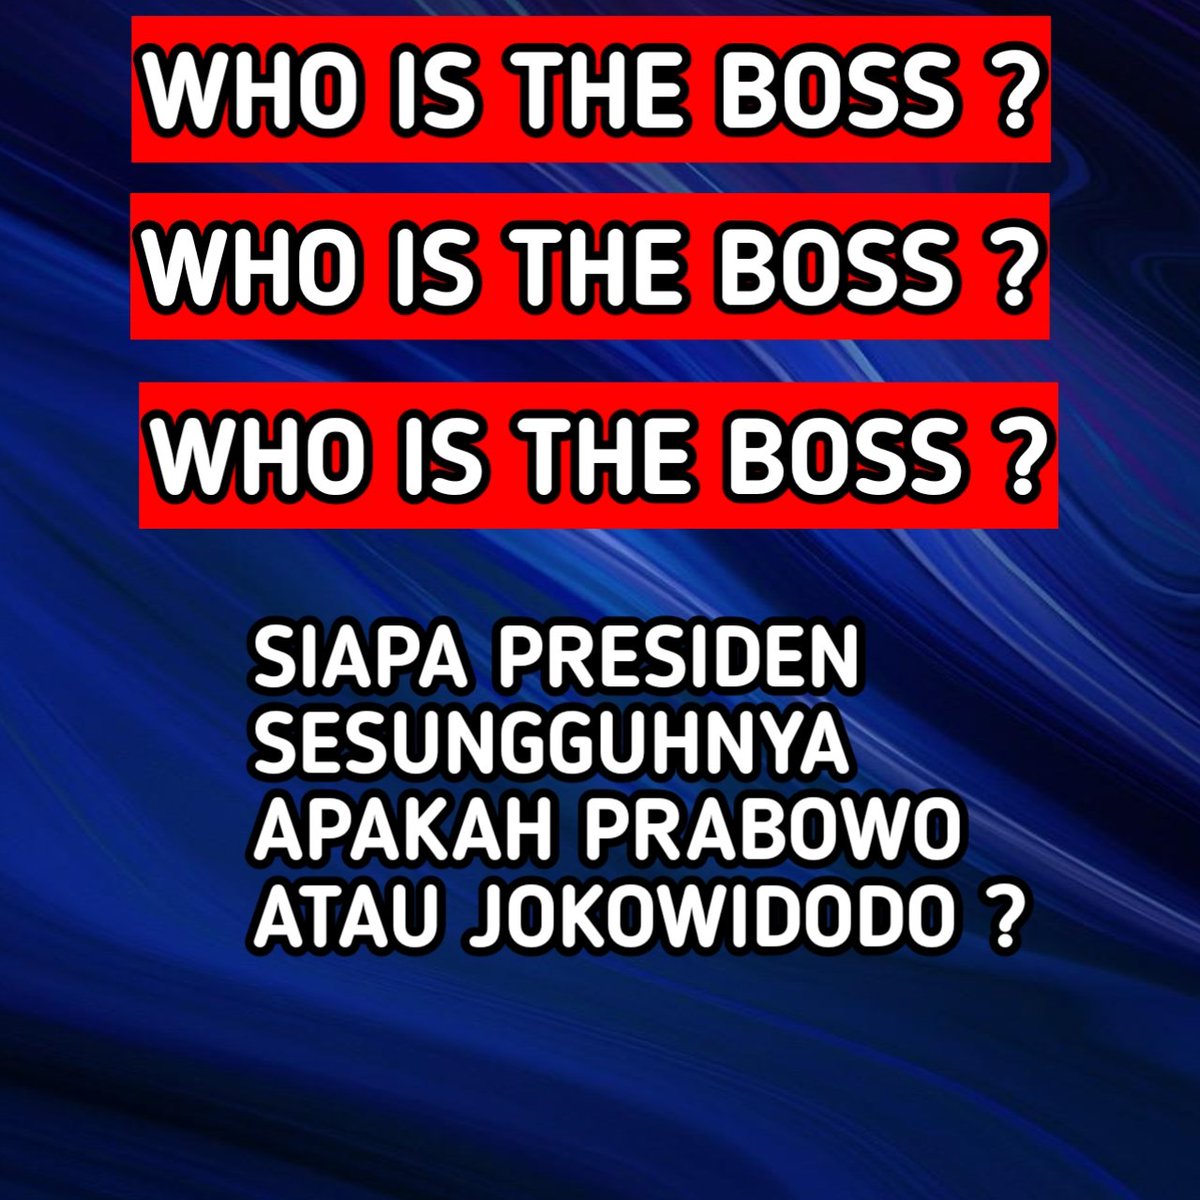 Dapatkah Prabowo menjadi tumpuan harapan rakyat hidup sejahtera, setelah negara dihancurlantakan Raja ngibul tukang tepu profesional. Rakyat inginkan perubahan. #AniesPanutanku #AniesPemimpinku